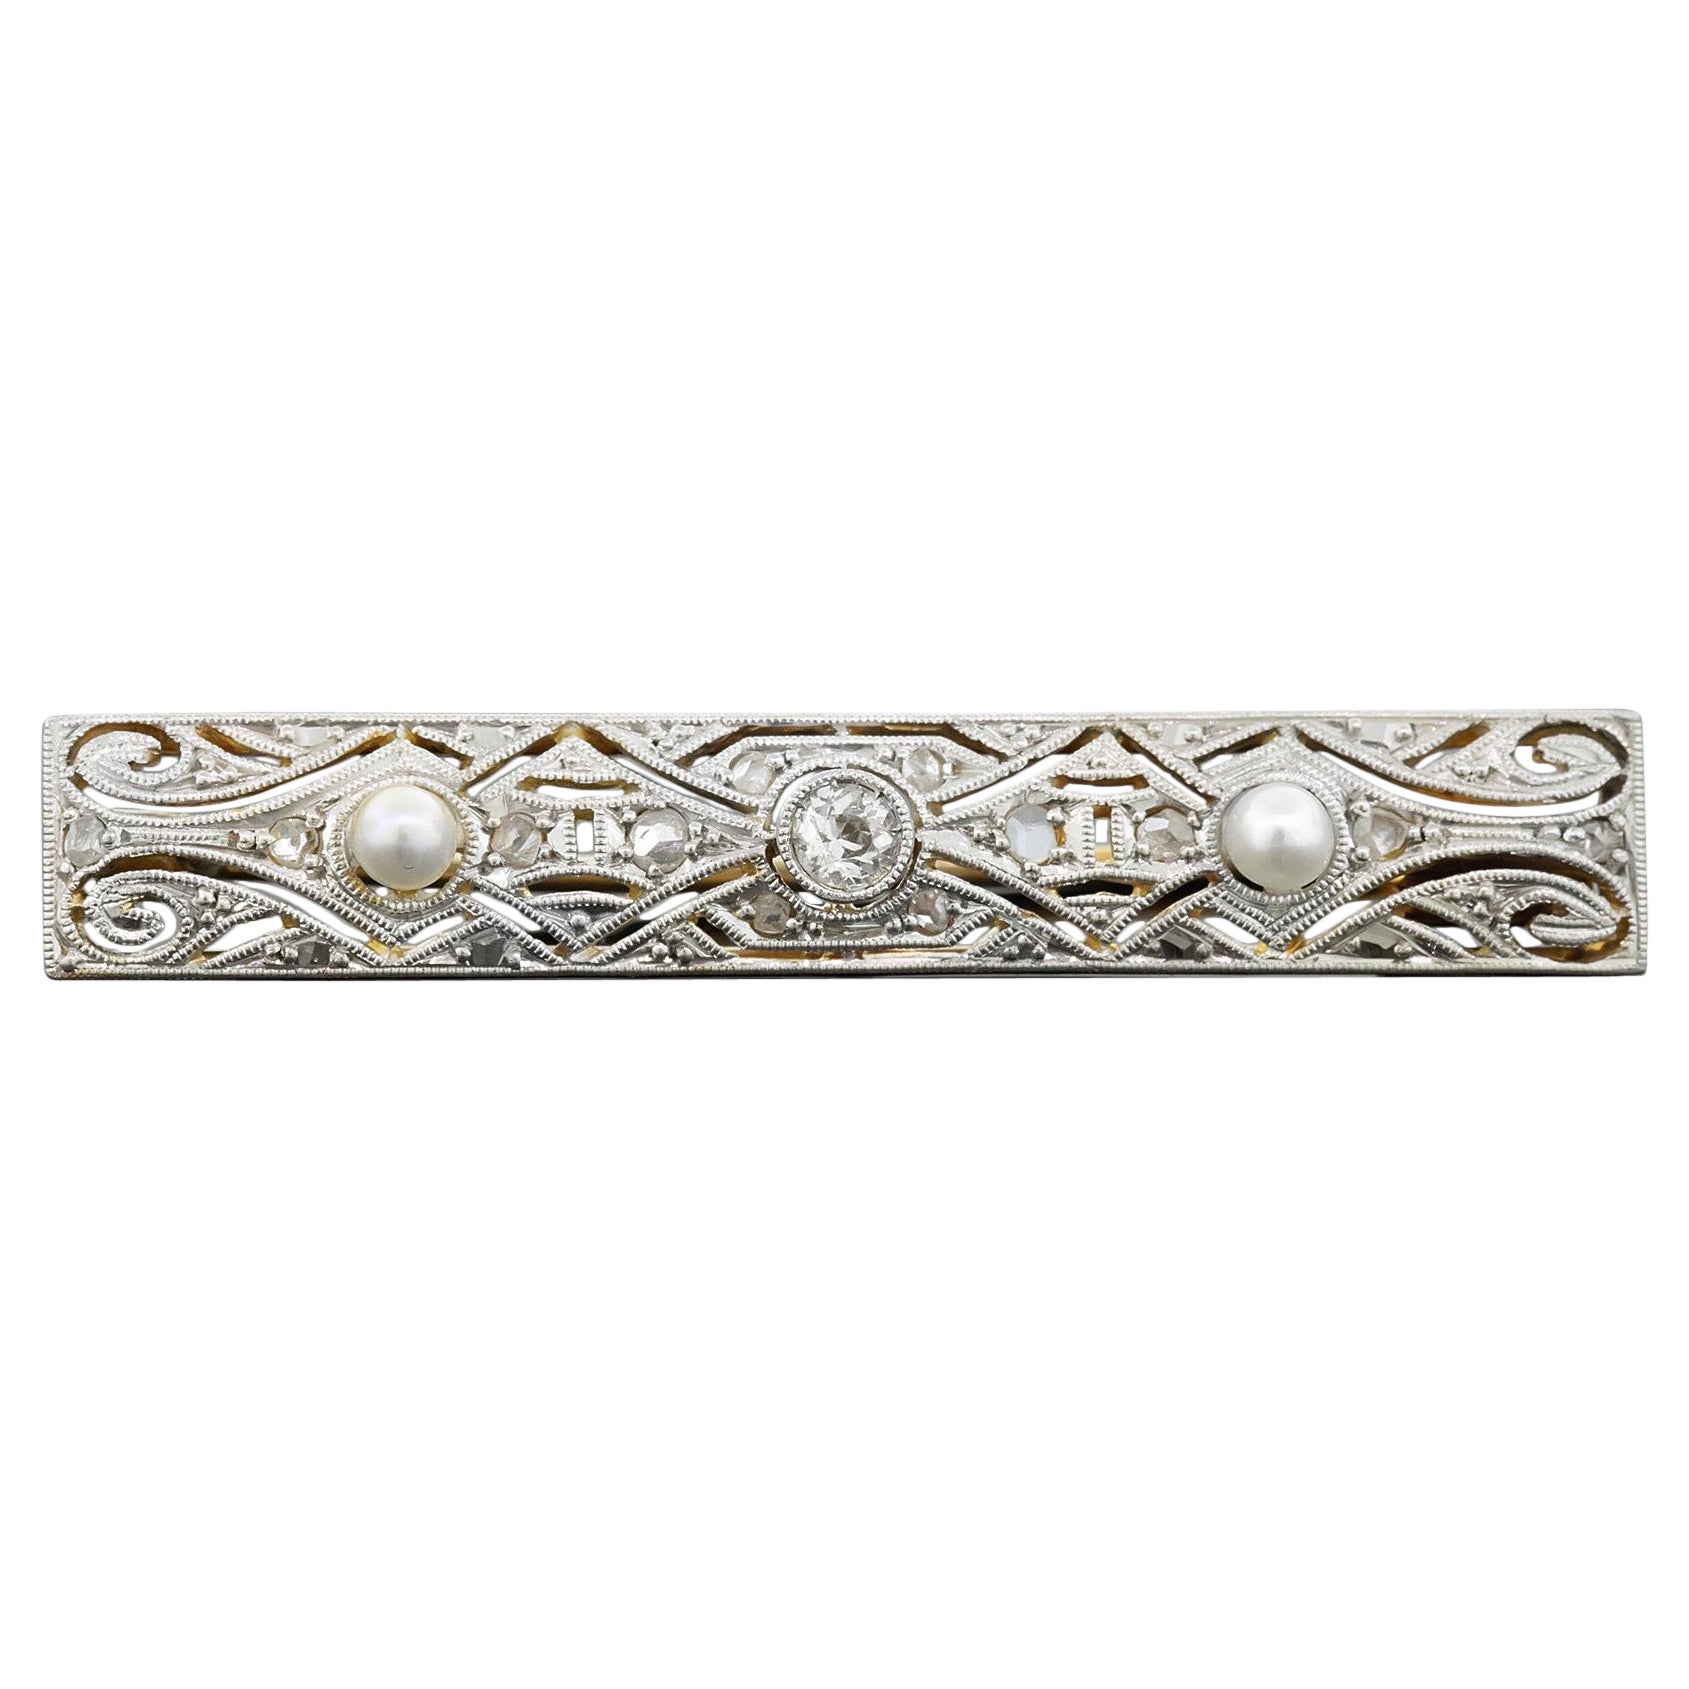 Edwardianische Perlen- und Diamantbrosche Circa 1910-20